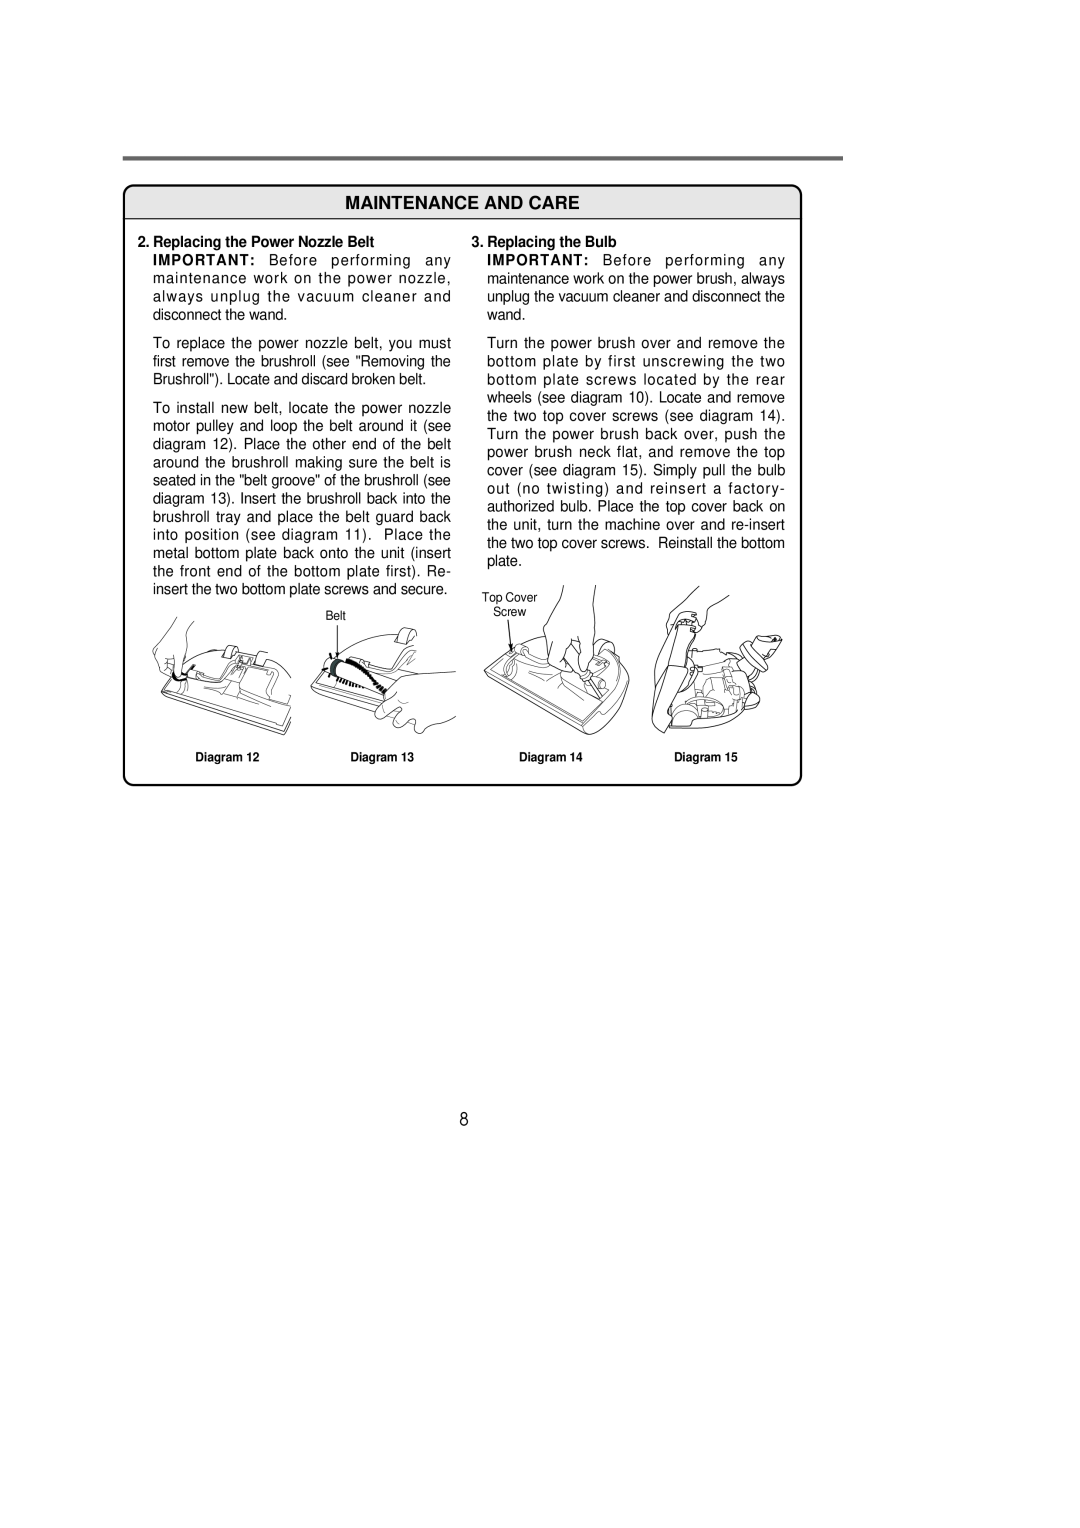 Riccar 1500P manual Replacing the Bulb, Belt, Top Cover Screw 